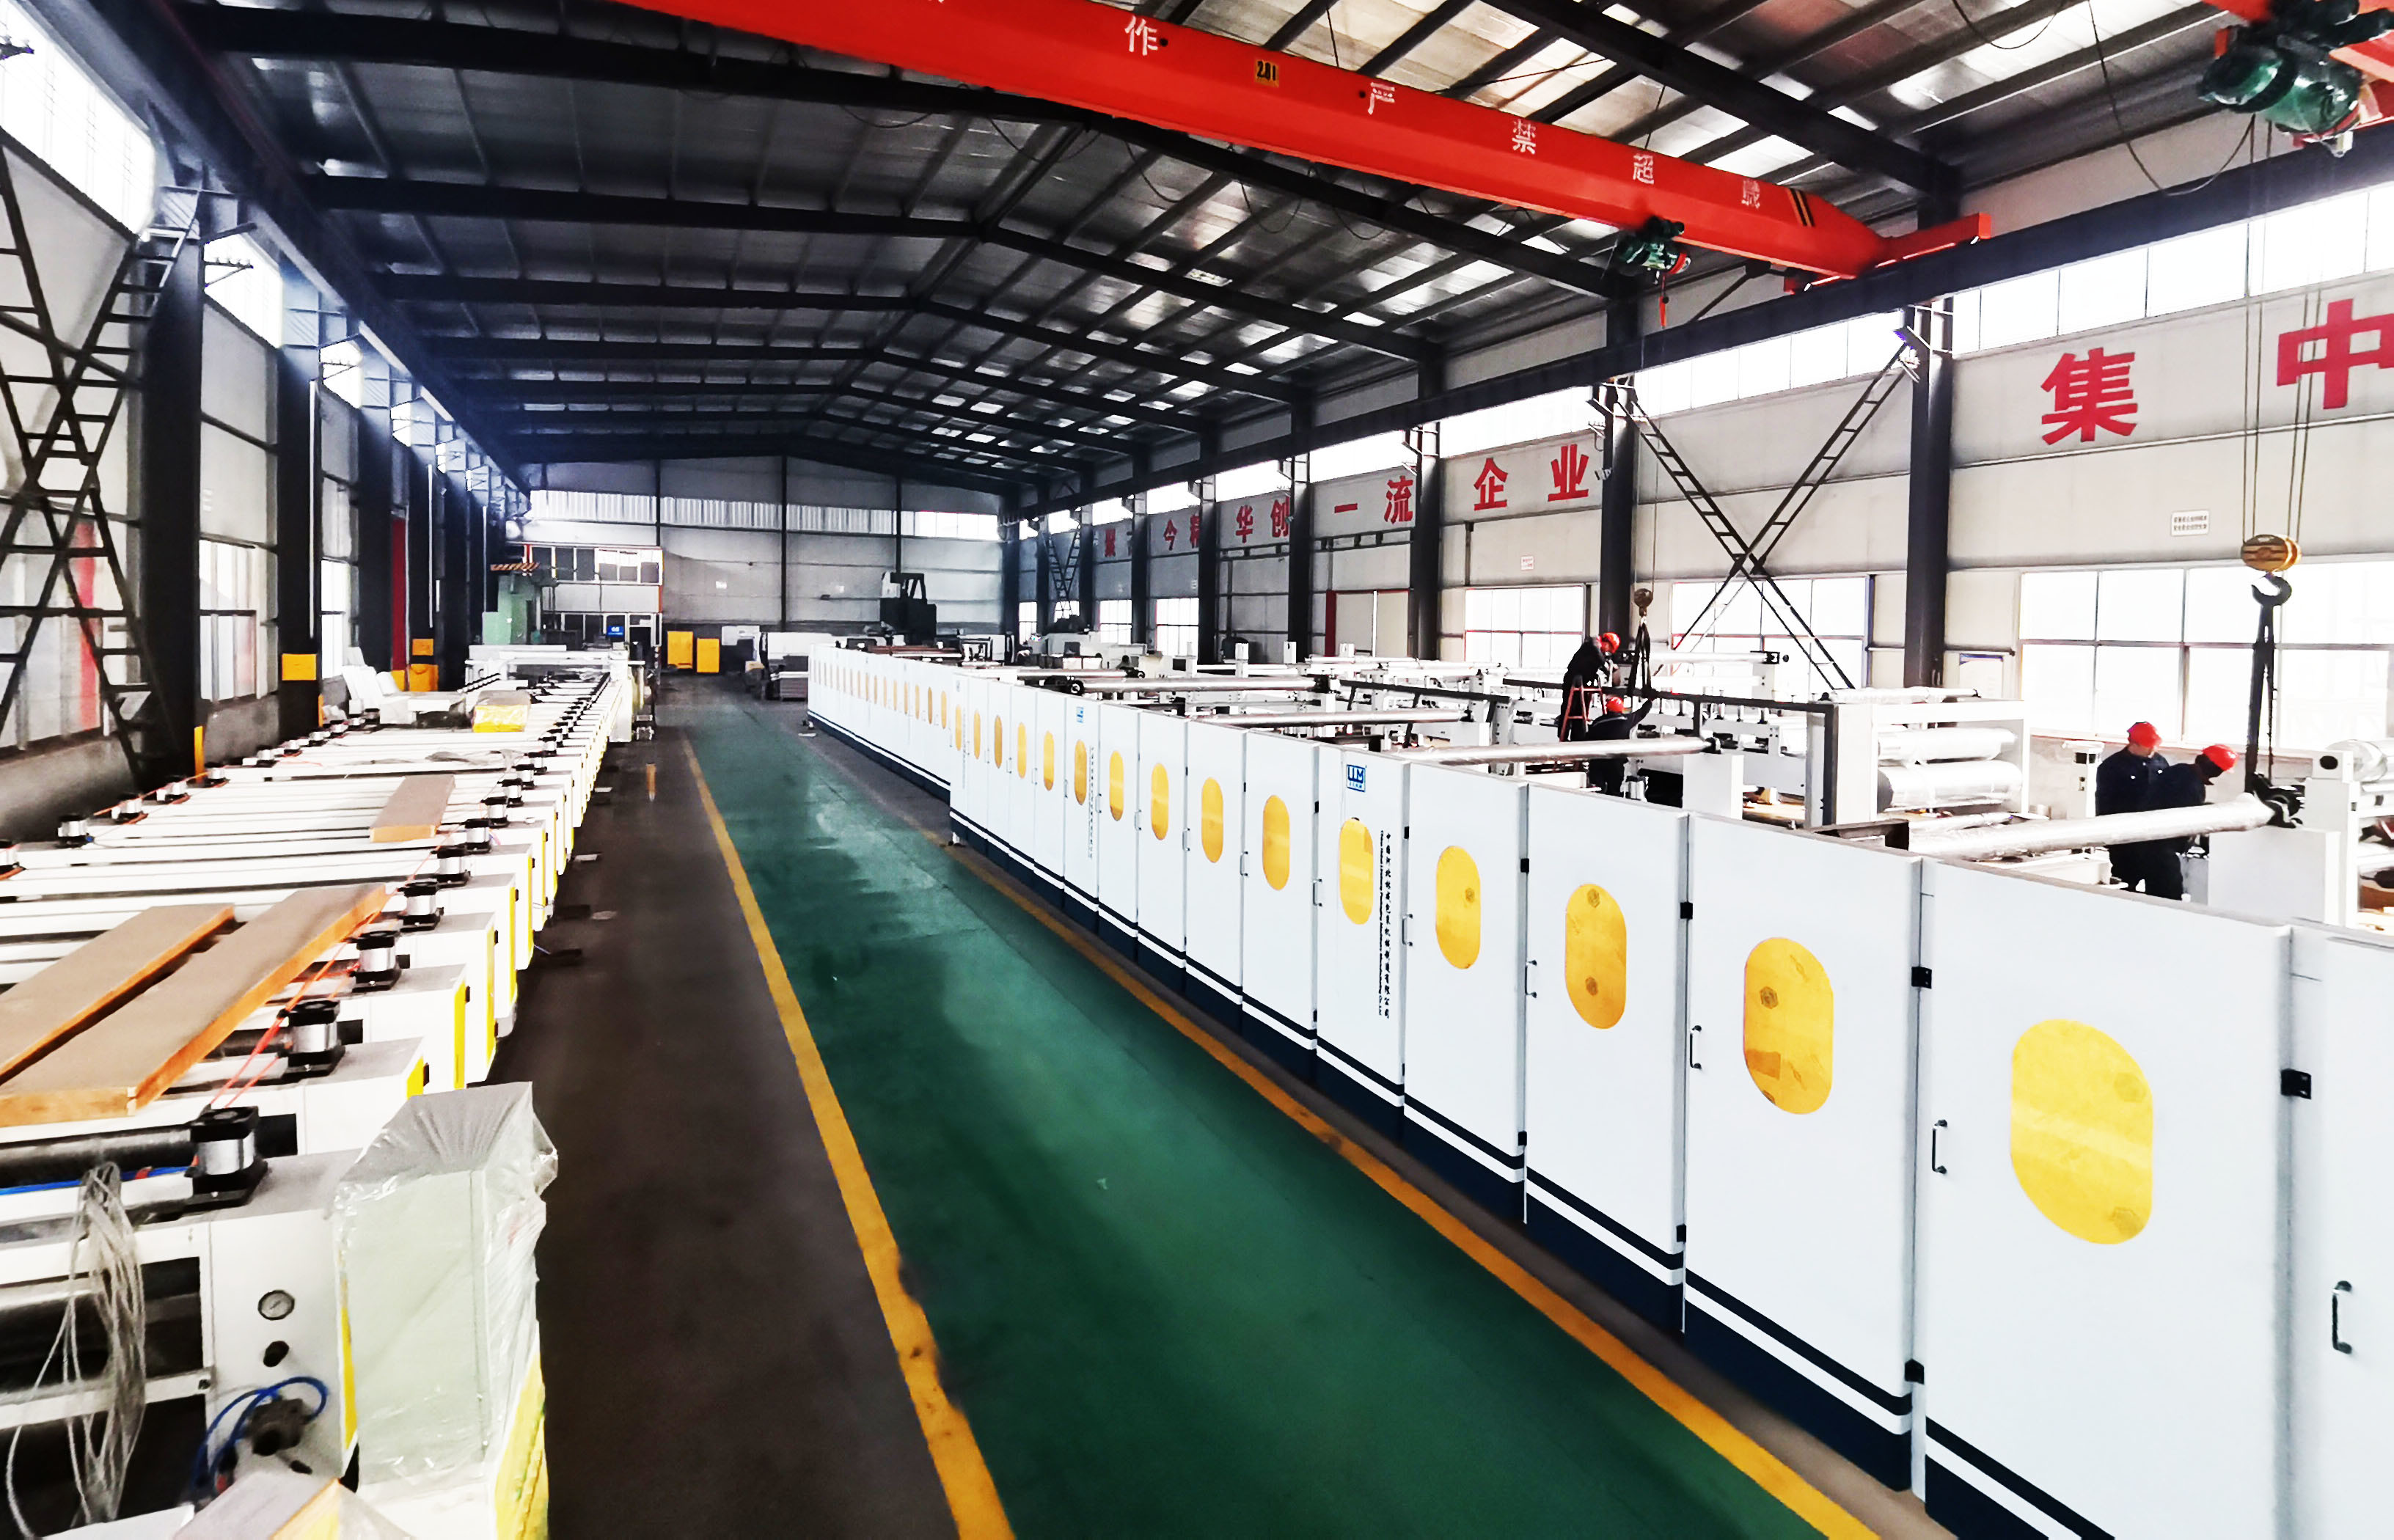 TRUNG QUỐC Cangzhou Aodong Light Industry Machinery Equipment Co., Ltd. hồ sơ công ty